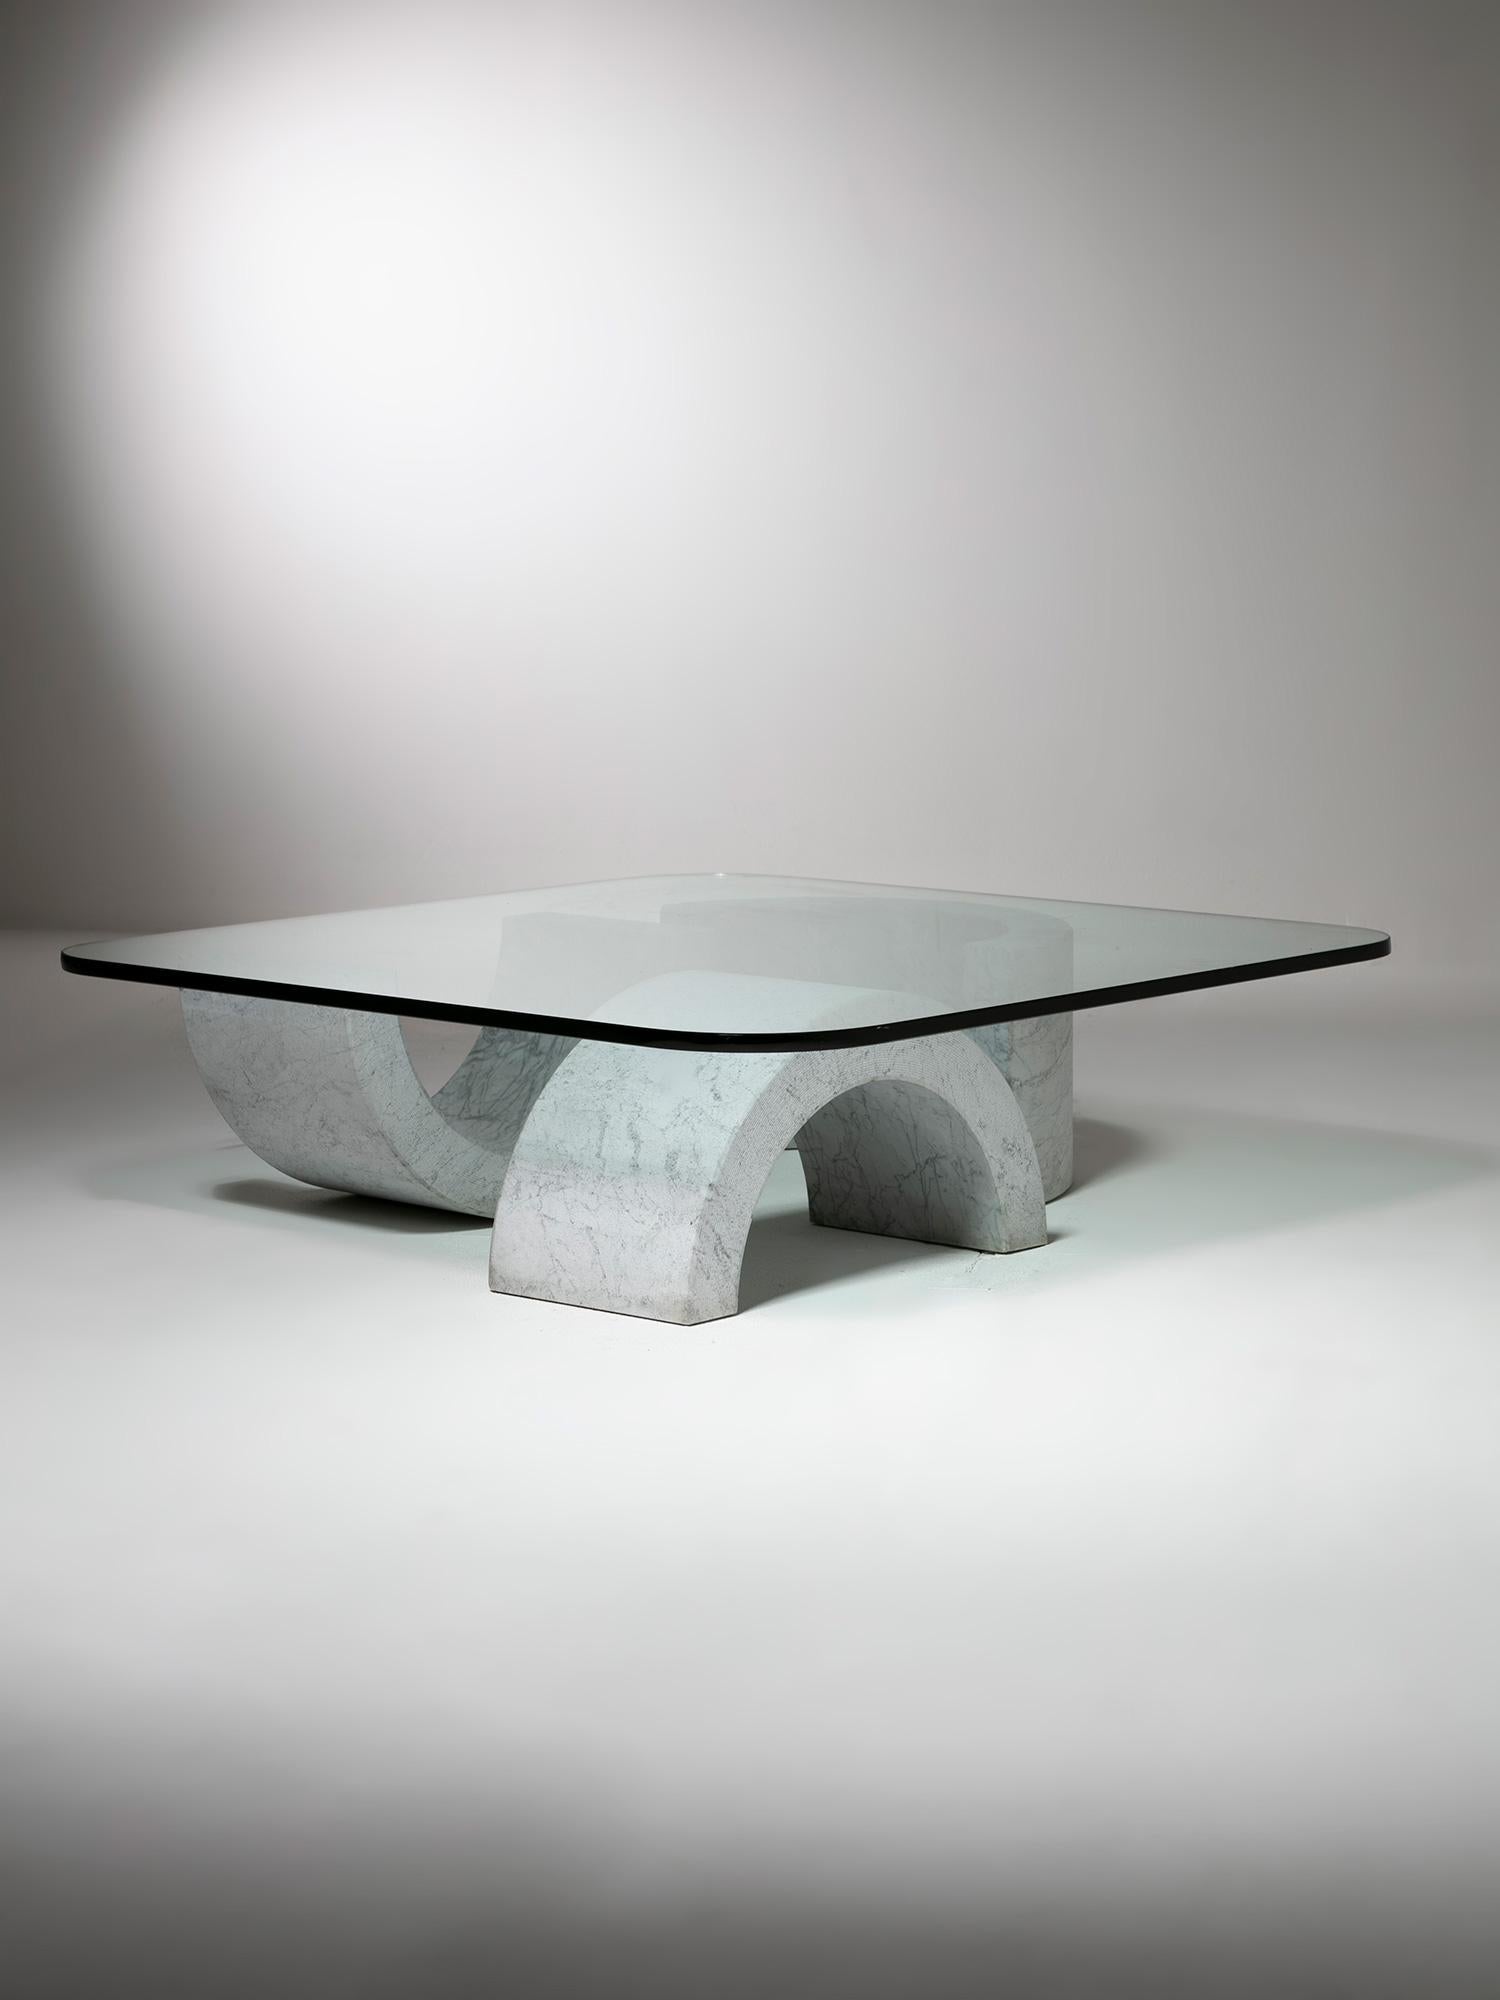 Niedriger Tisch „Groppo“ aus Marmor und Glas von Raffaello Repossi für Up&Up, Italien, 1970er Jahre (Italienisch)